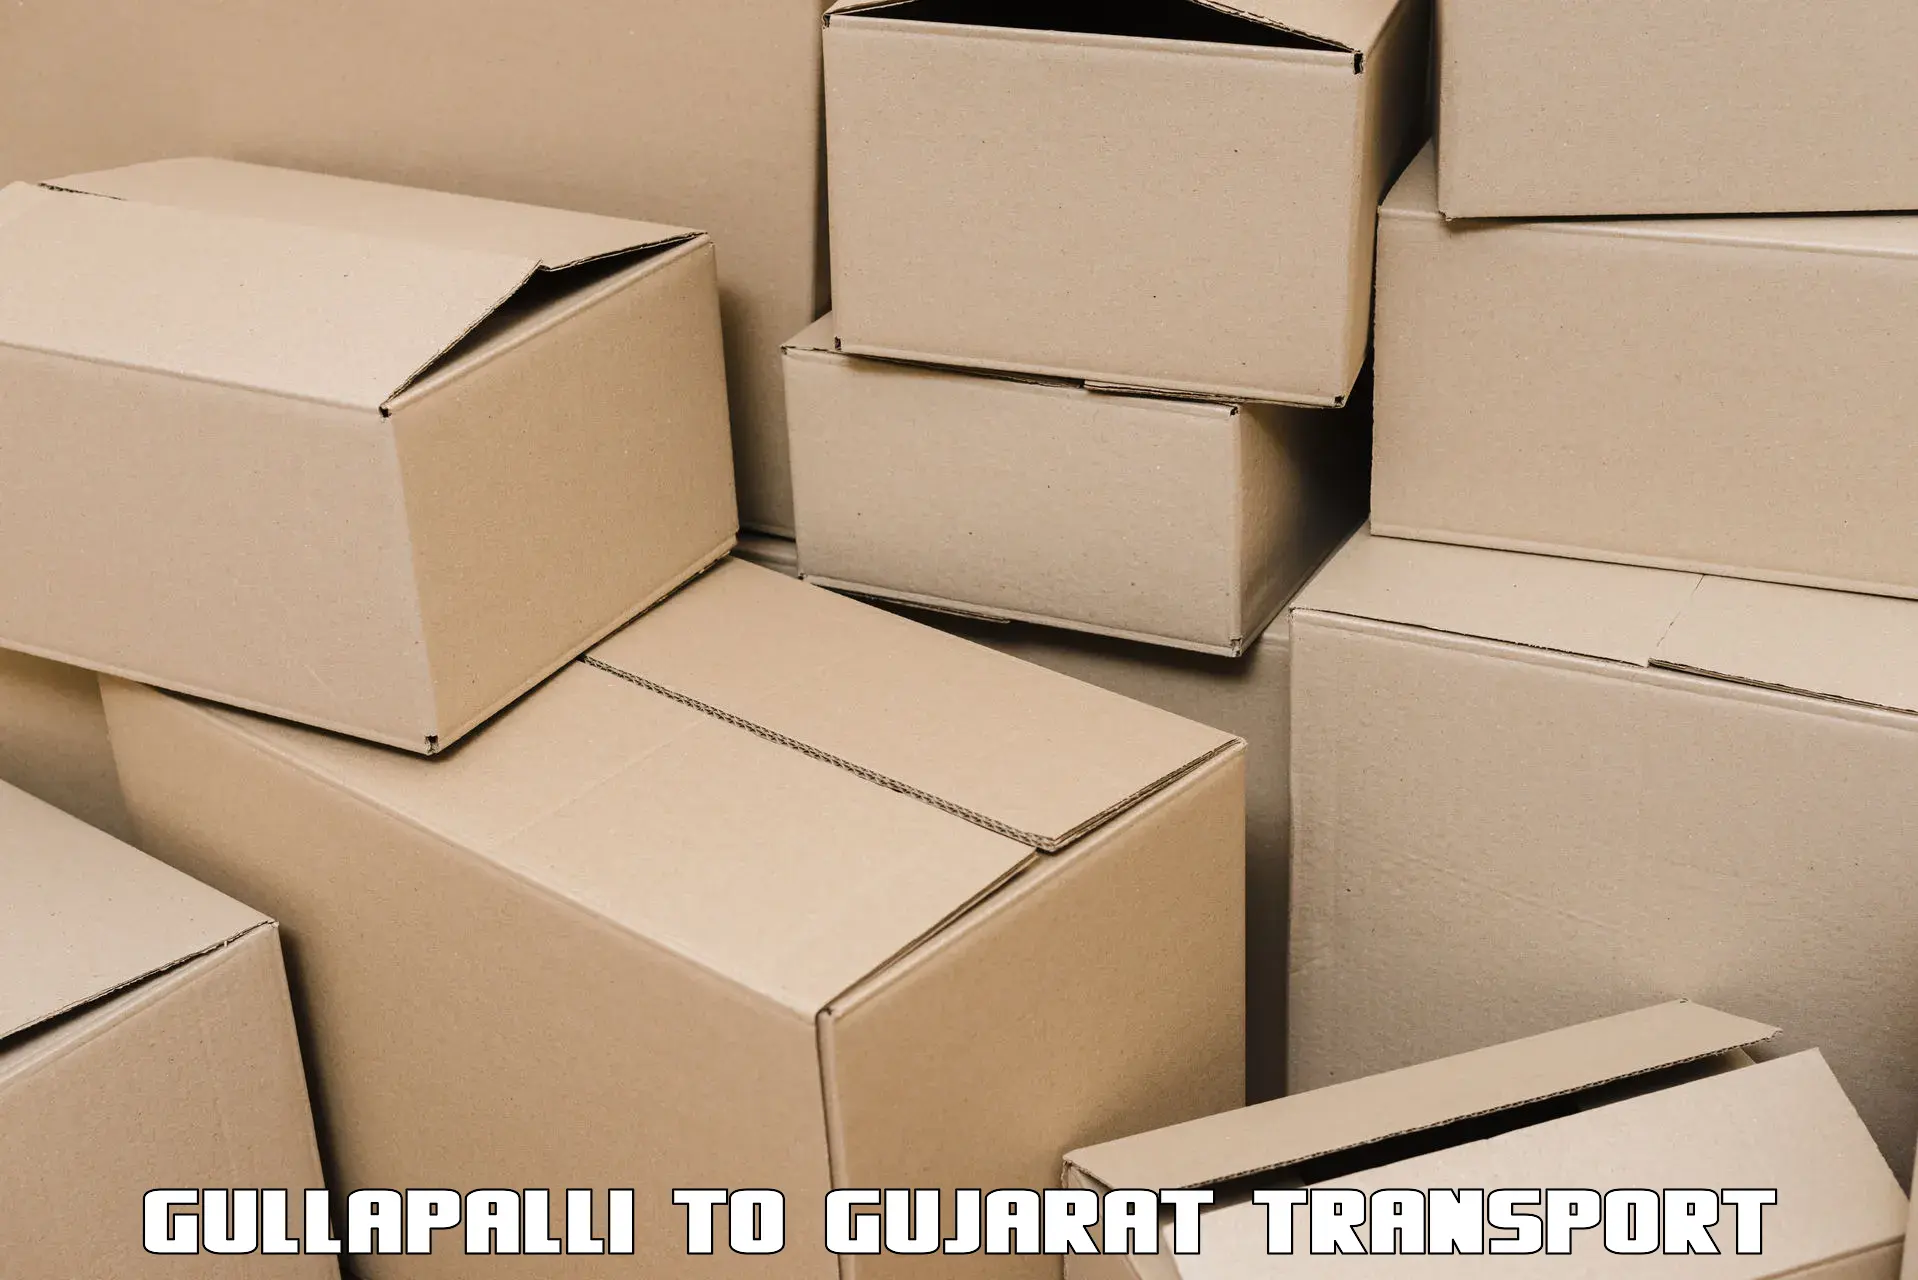 Pick up transport service Gullapalli to IIIT Surat